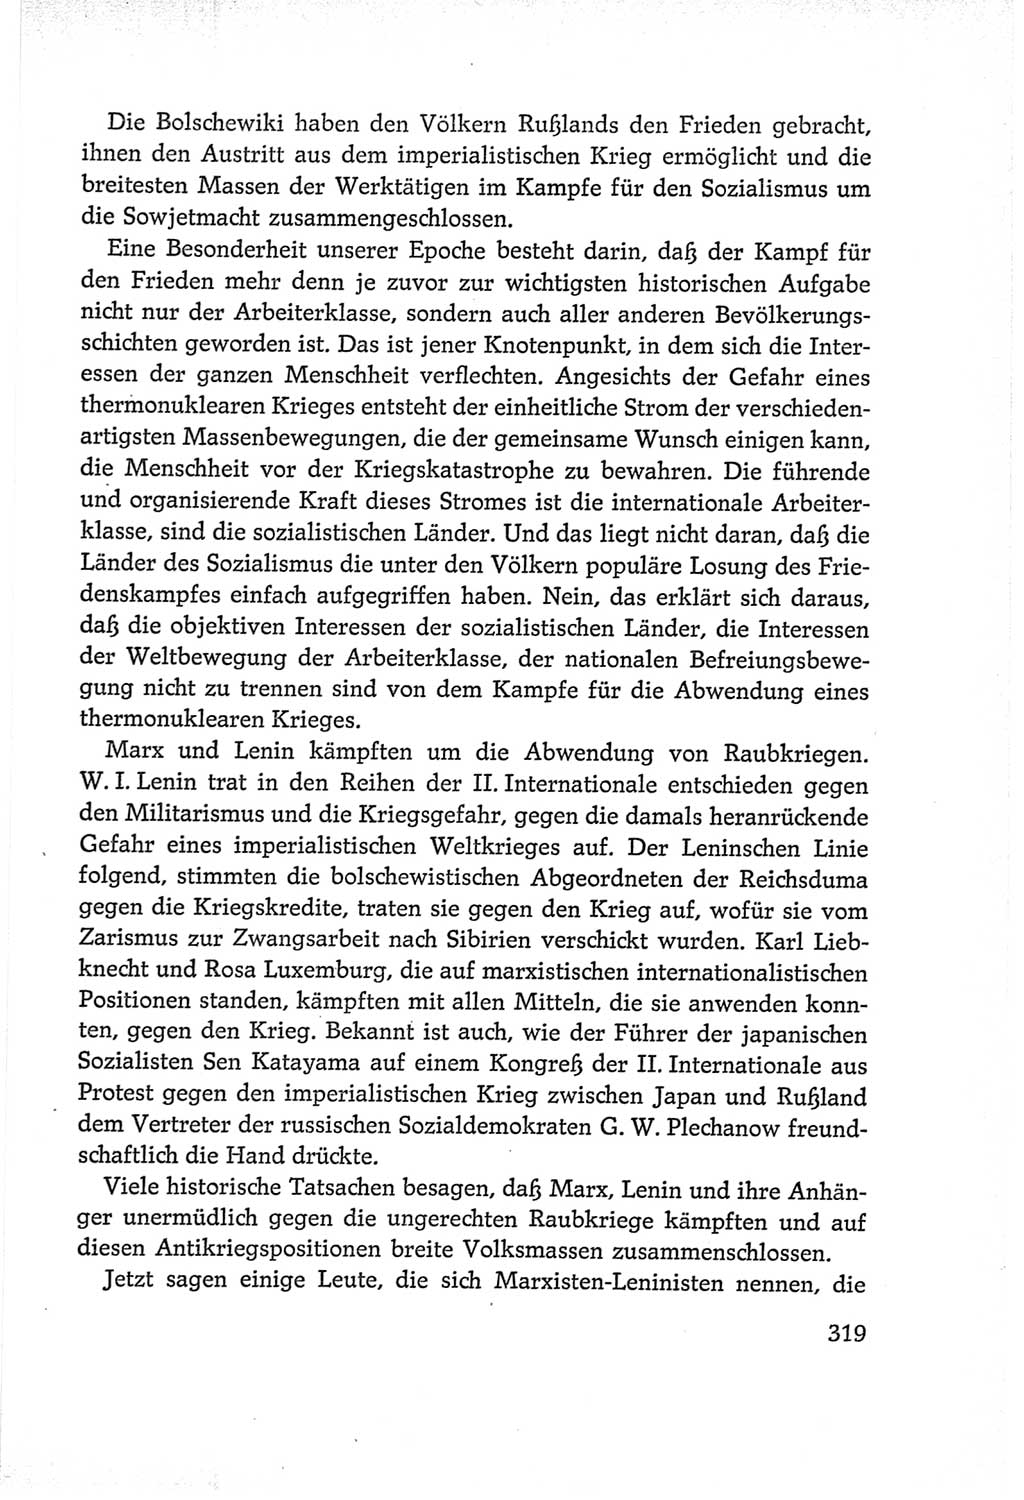 Protokoll der Verhandlungen des Ⅵ. Parteitages der Sozialistischen Einheitspartei Deutschlands (SED) [Deutsche Demokratische Republik (DDR)] 1963, Band Ⅰ, Seite 319 (Prot. Verh. Ⅵ. PT SED DDR 1963, Bd. Ⅰ, S. 319)